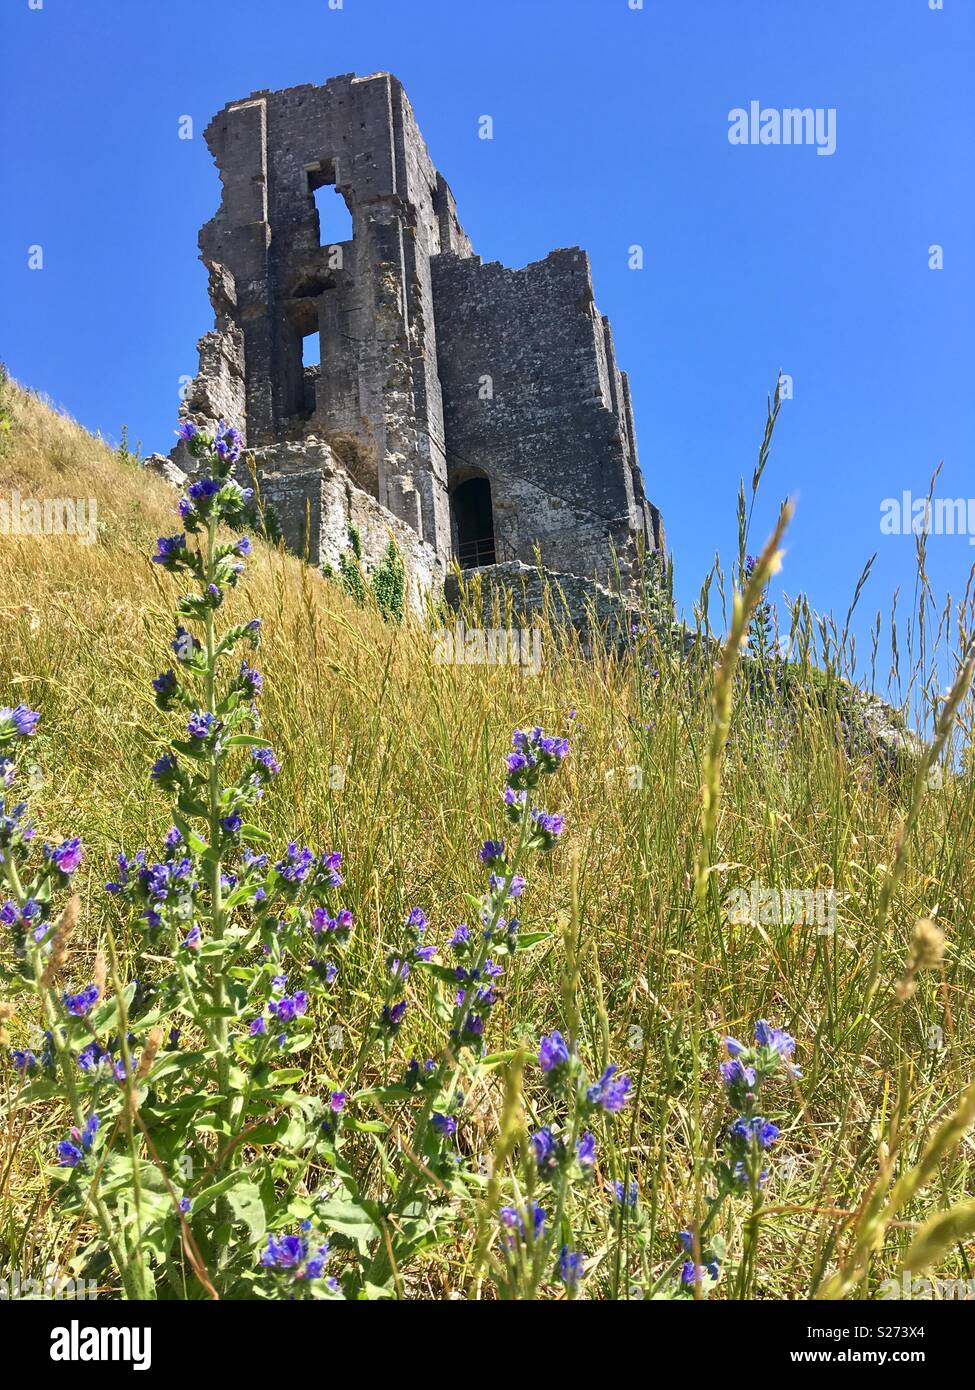 La spectaculaire, romantique ruine de Corfe Castle, à l'île de Purbeck, Dorset, Angleterre Banque D'Images